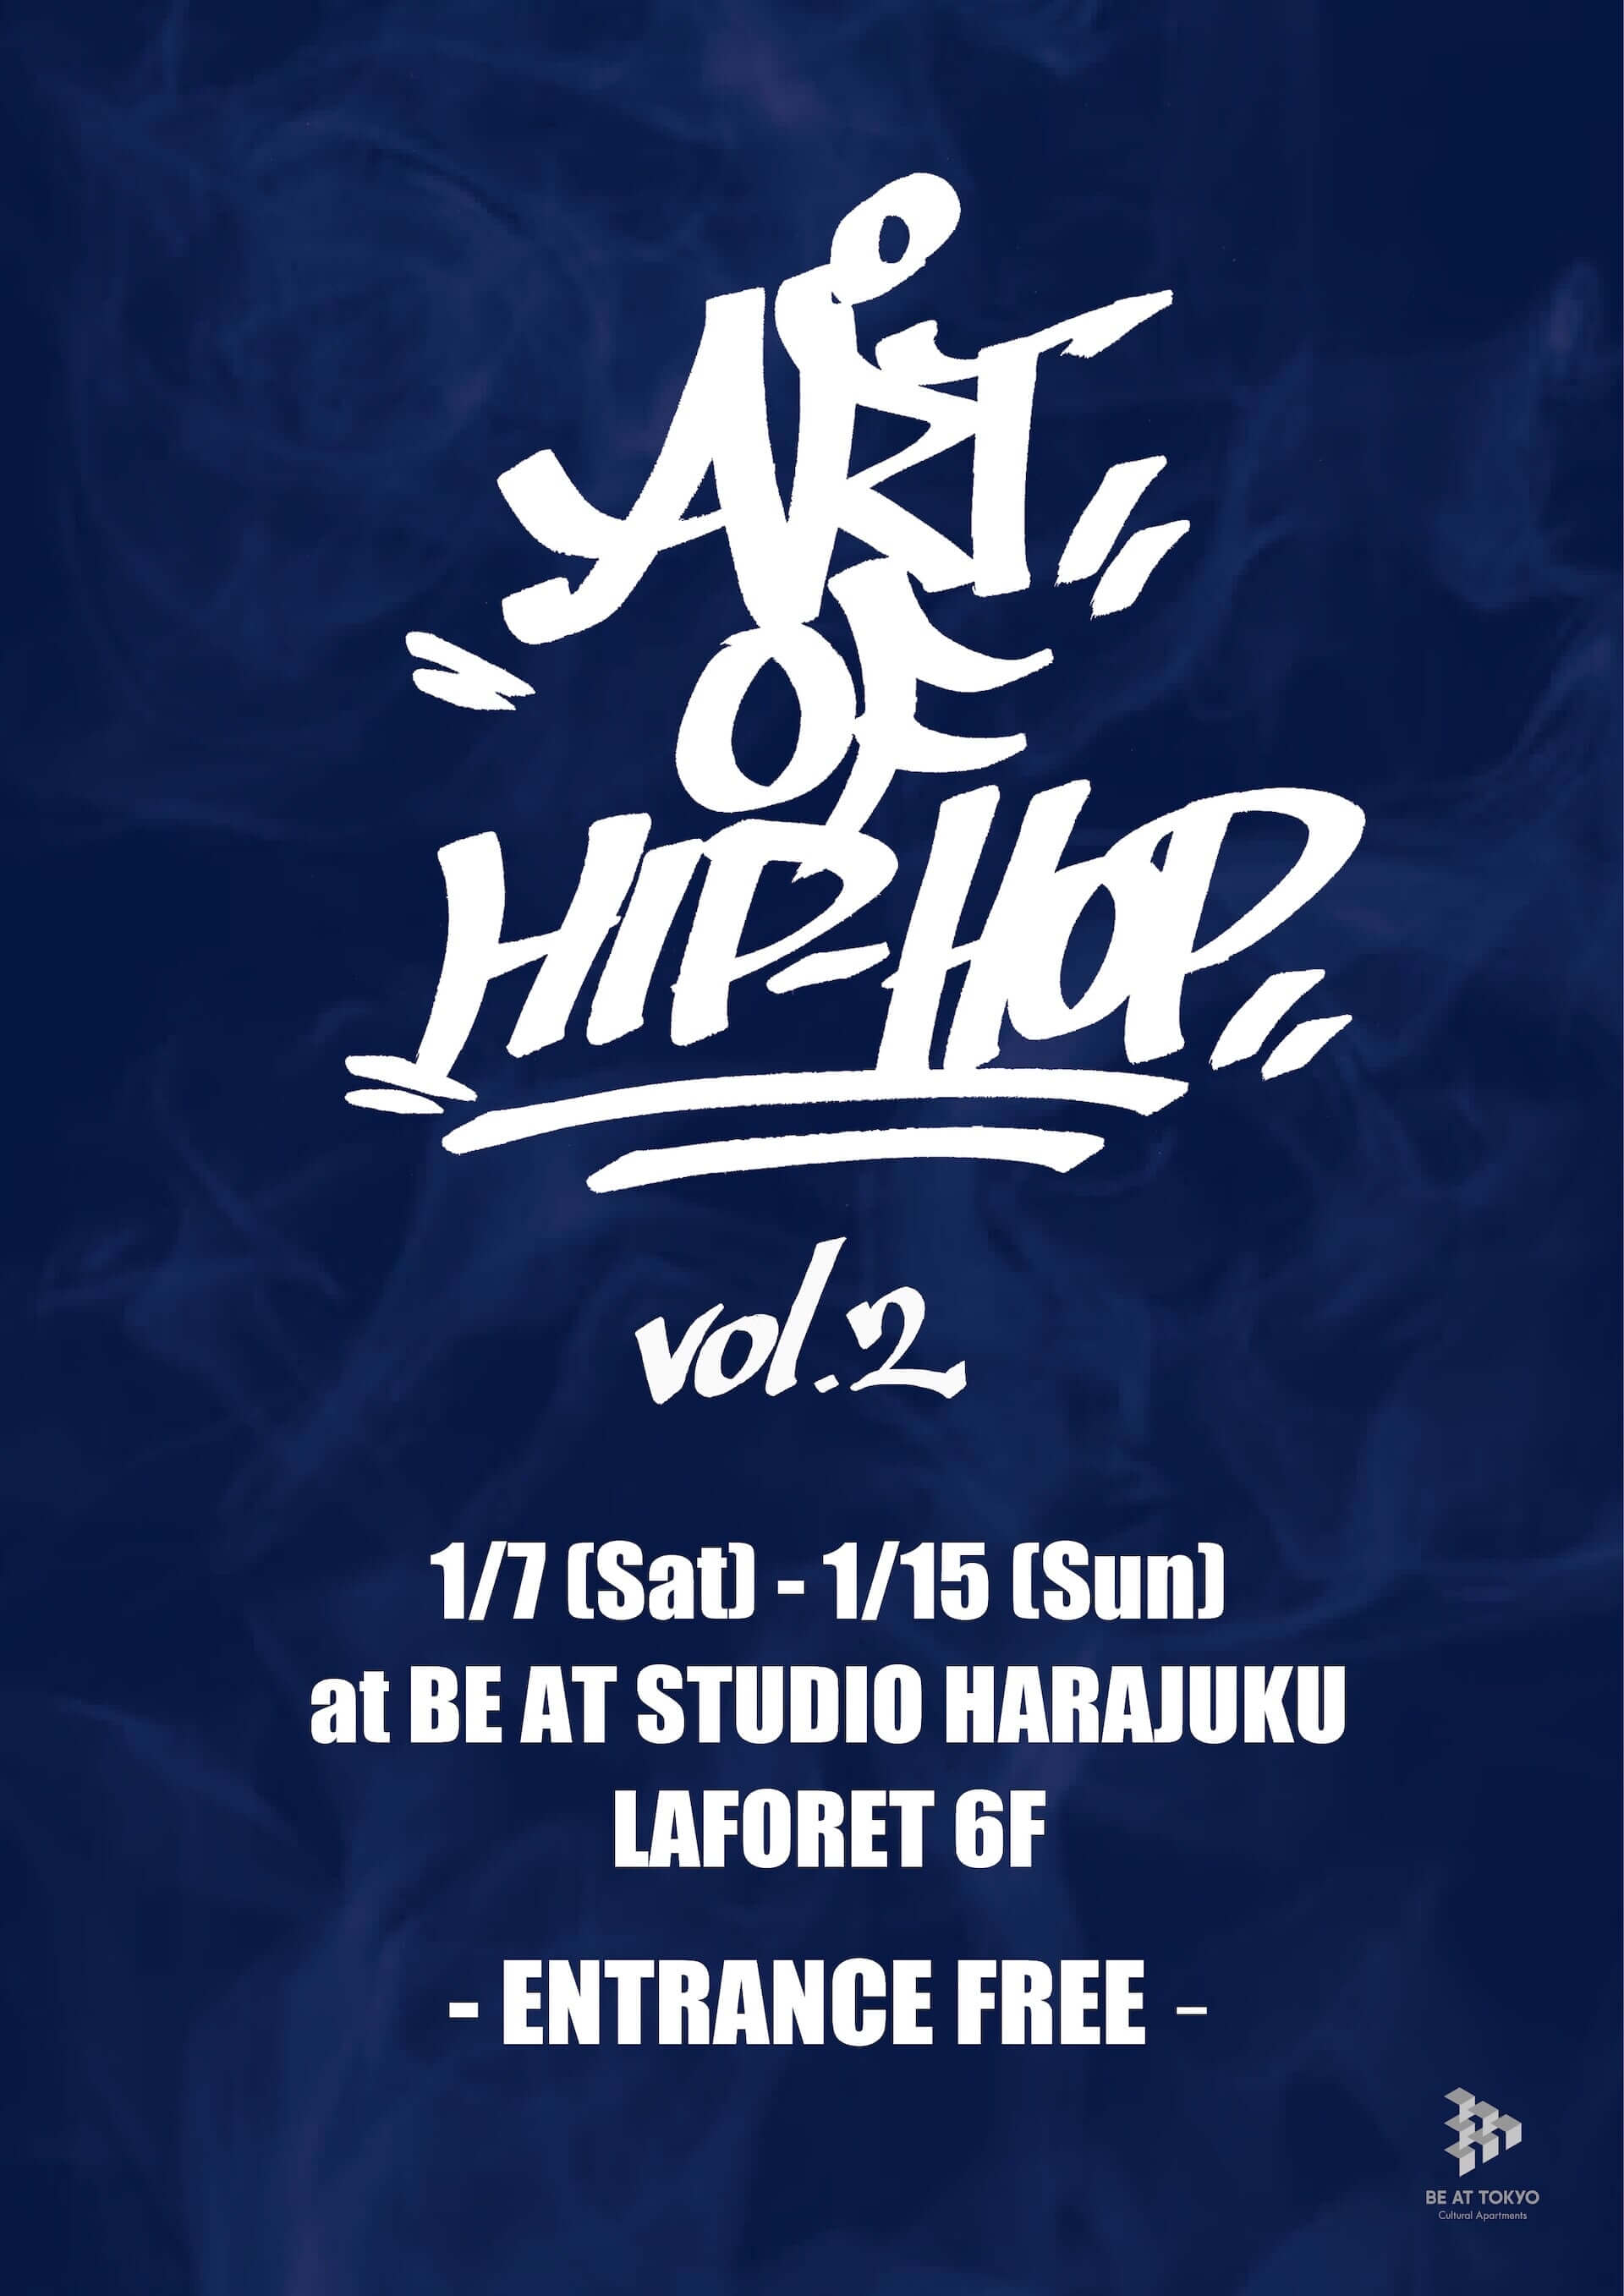 ART OF HIP HOP vol.2